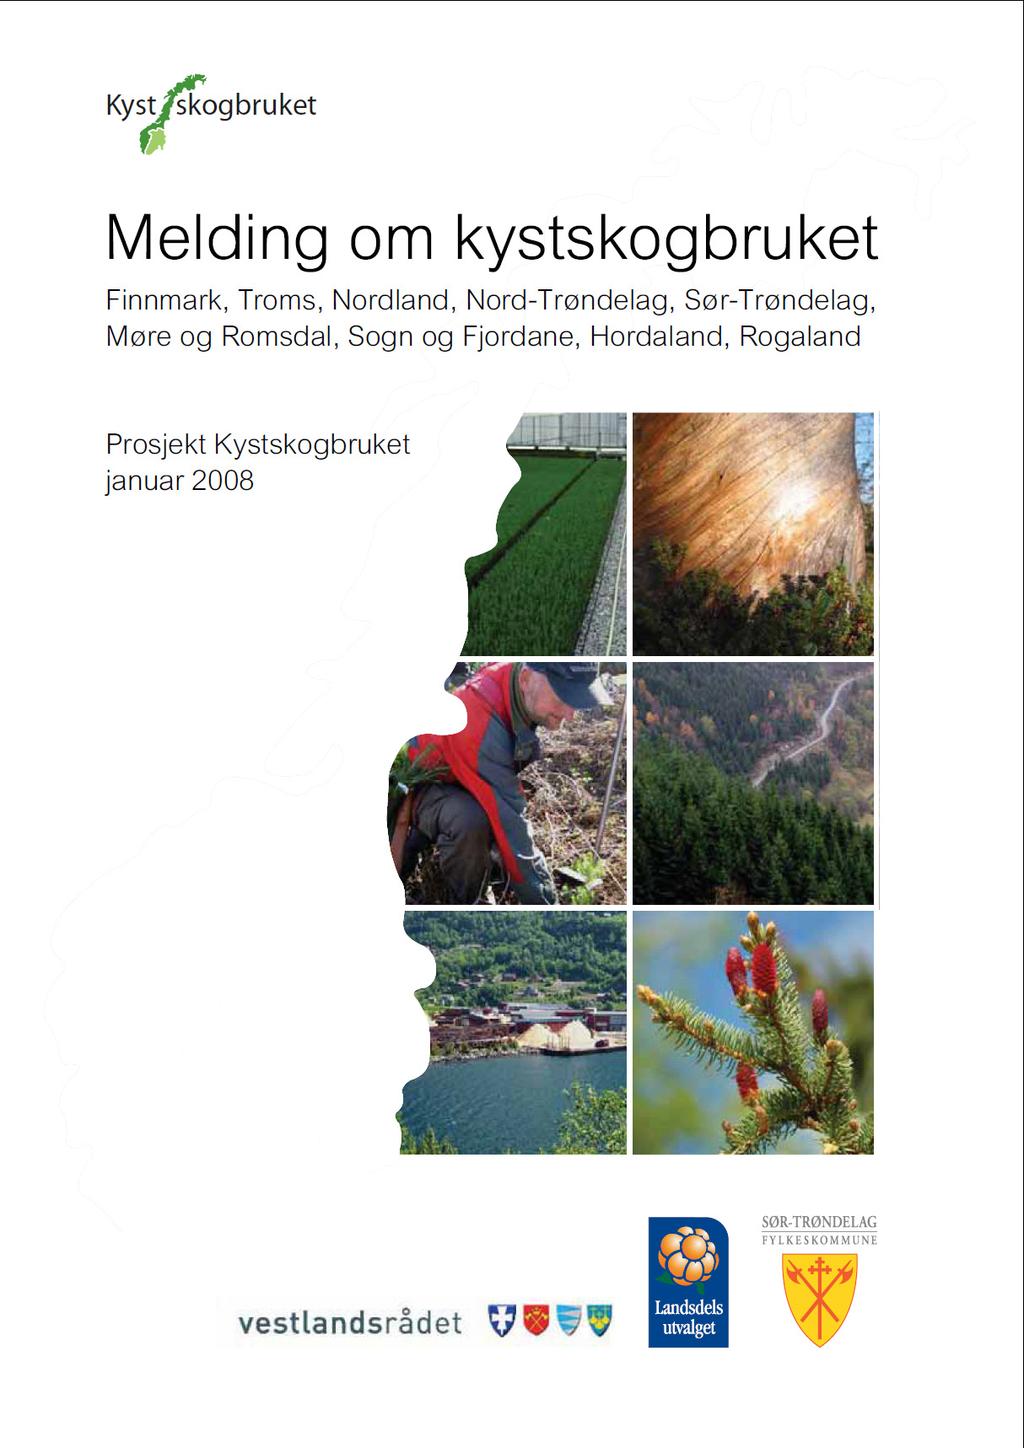 4. Melding om kystskogbruket Ni fylkeskommunar, frå Rogaland i sør til Finnmark i nord, bestemte gjennom landsdelsråd/-utval i 2006 at det skulle utarbeidast ei Melding om kystskogbruket.